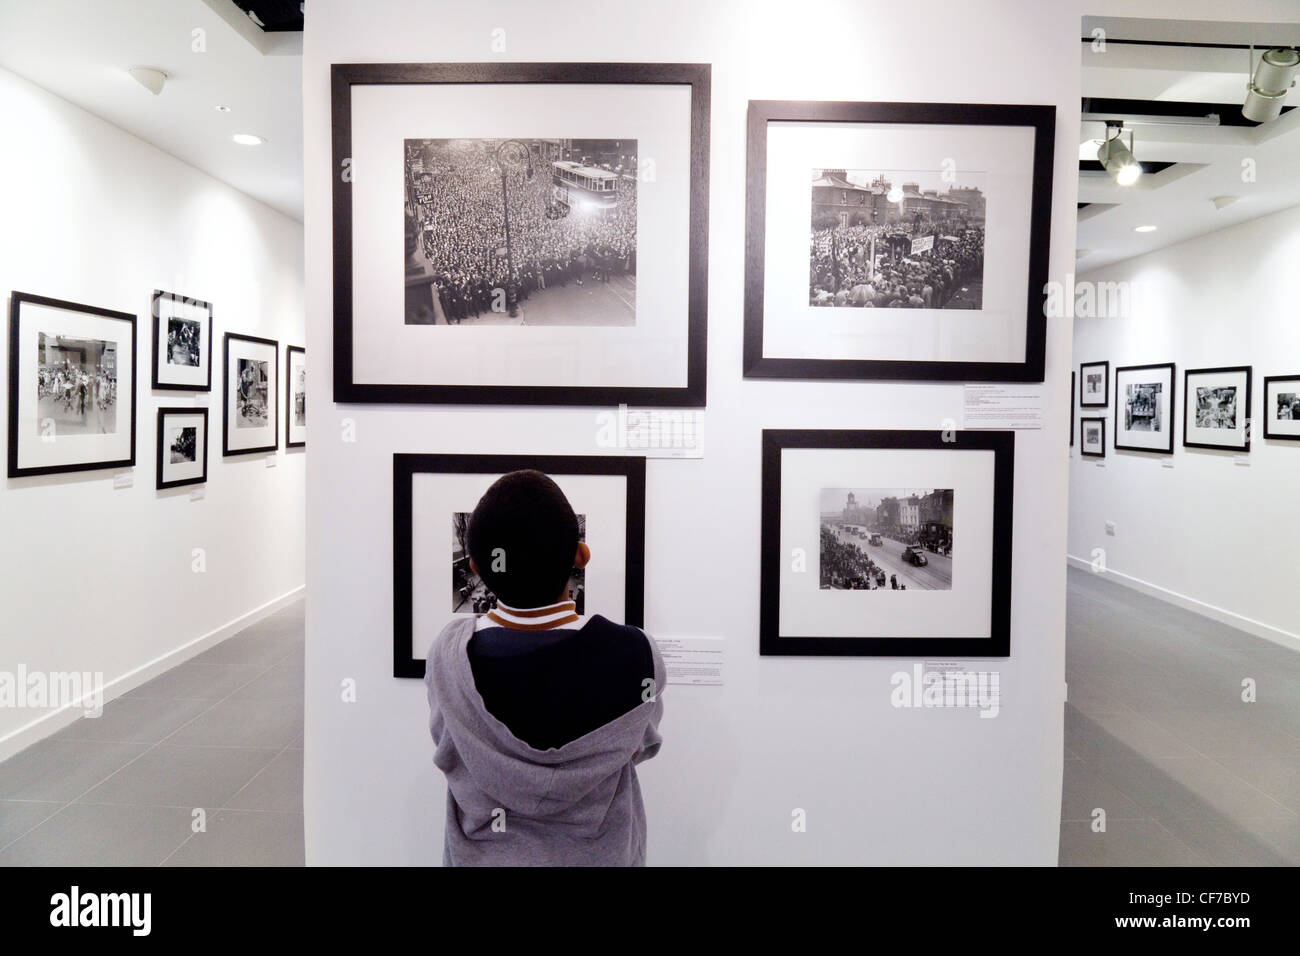 Un niño mirando fotos en una exposición de arte; el Getty Gallery, el centro comercial Westfield Stratford, Londres, Gran Bretaña. Foto de stock